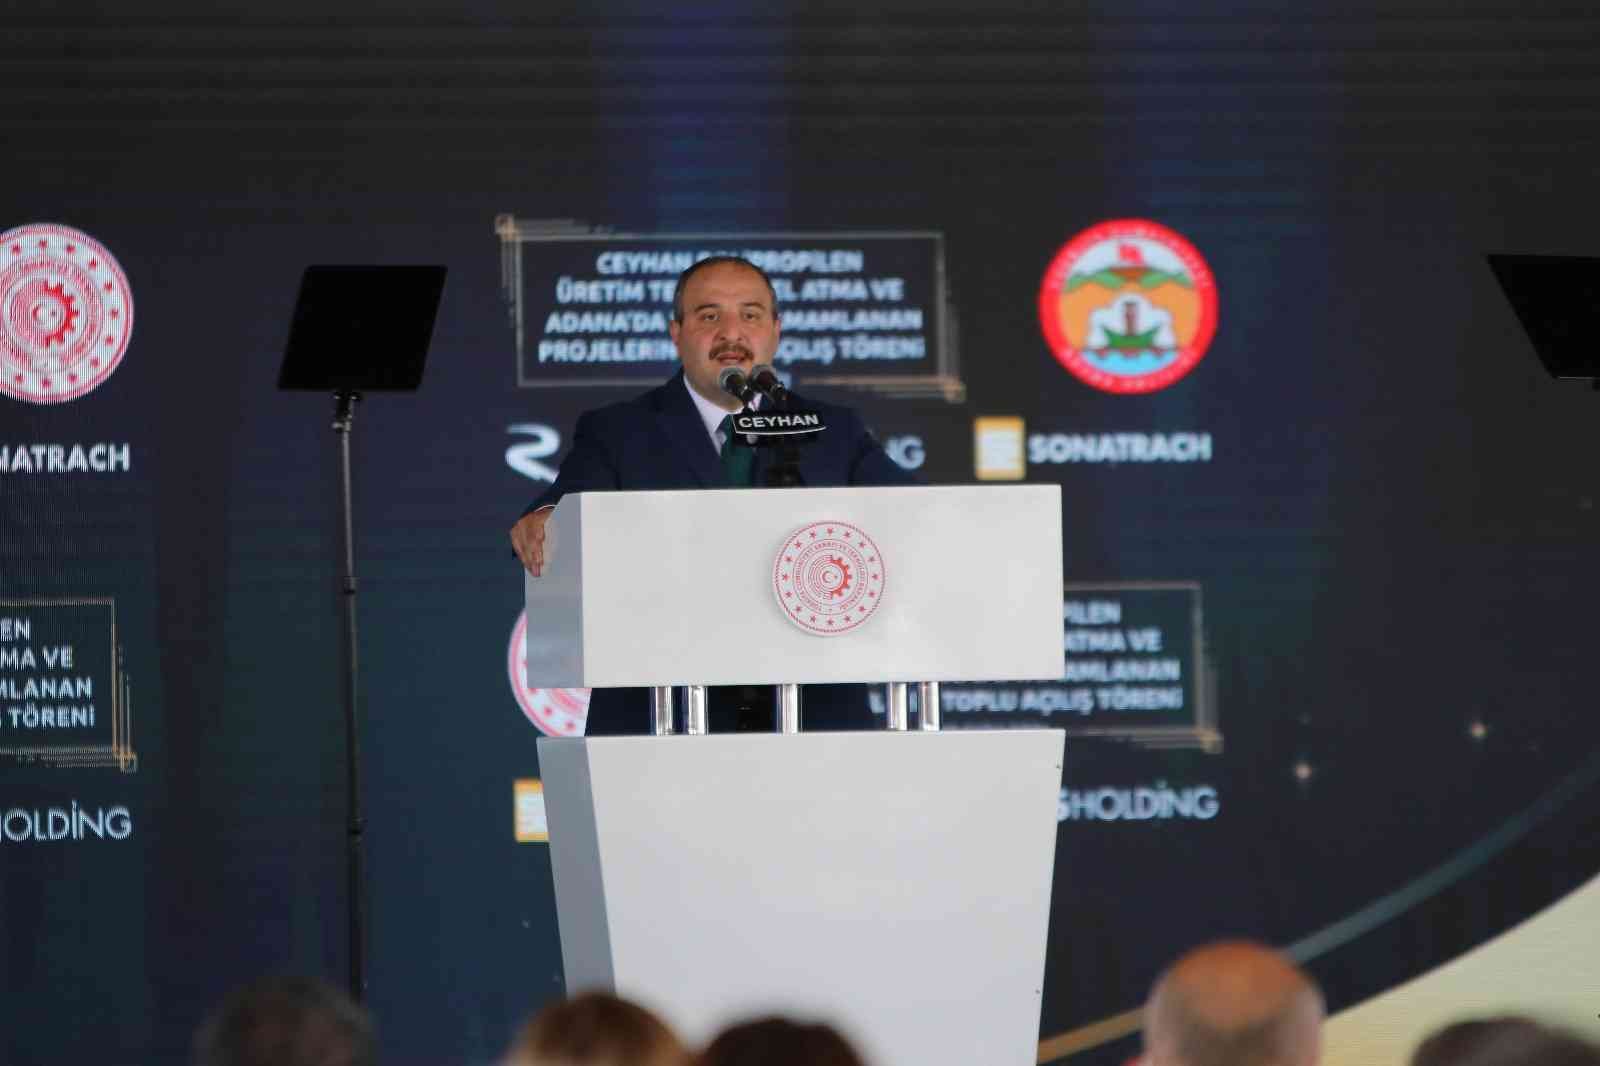 Bakan Varank: “Ekonomimize rekabetçiliği kazandırmış olacağız” #adana